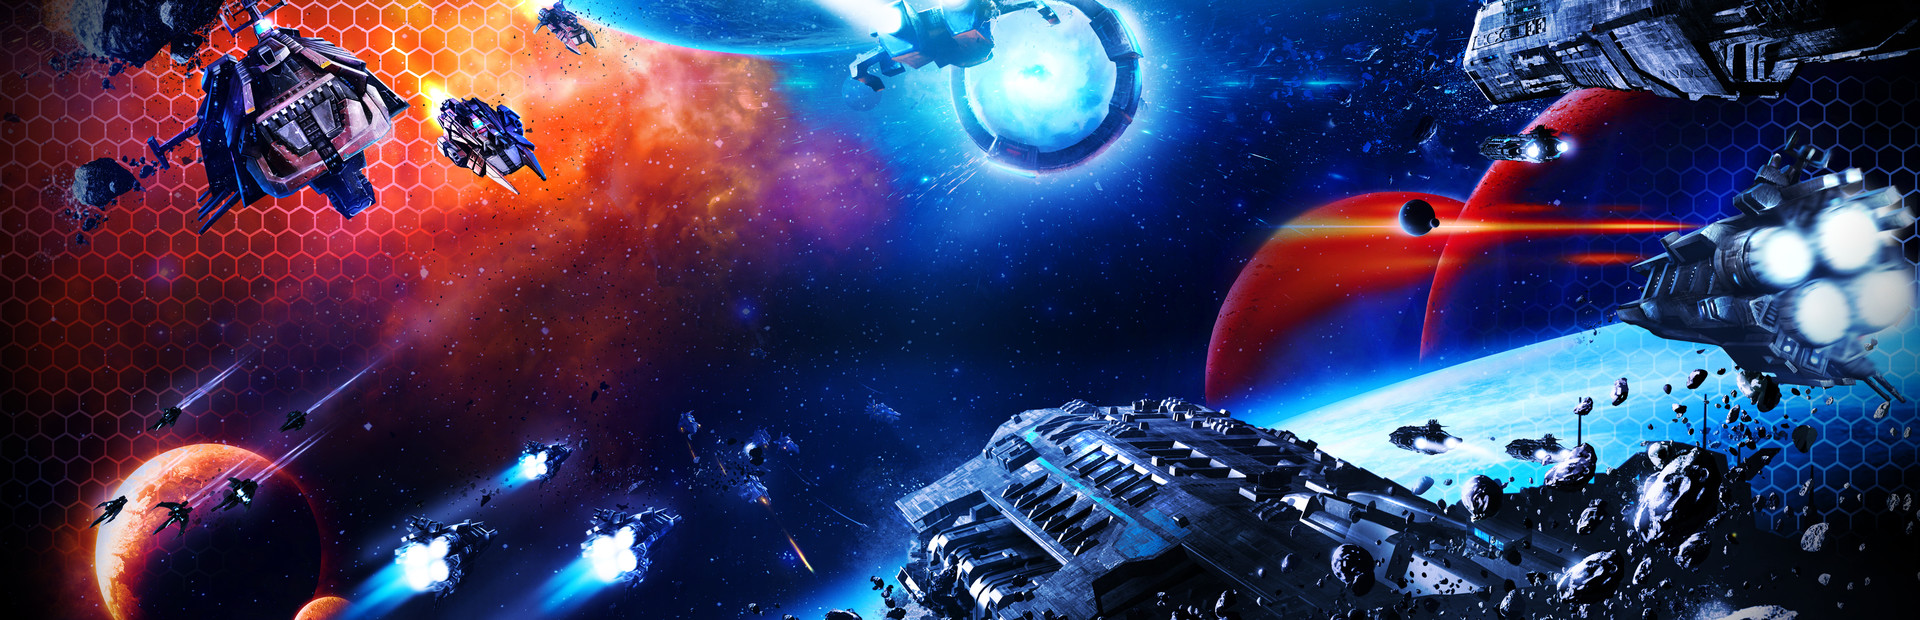 Sid Meier's Starships cover image